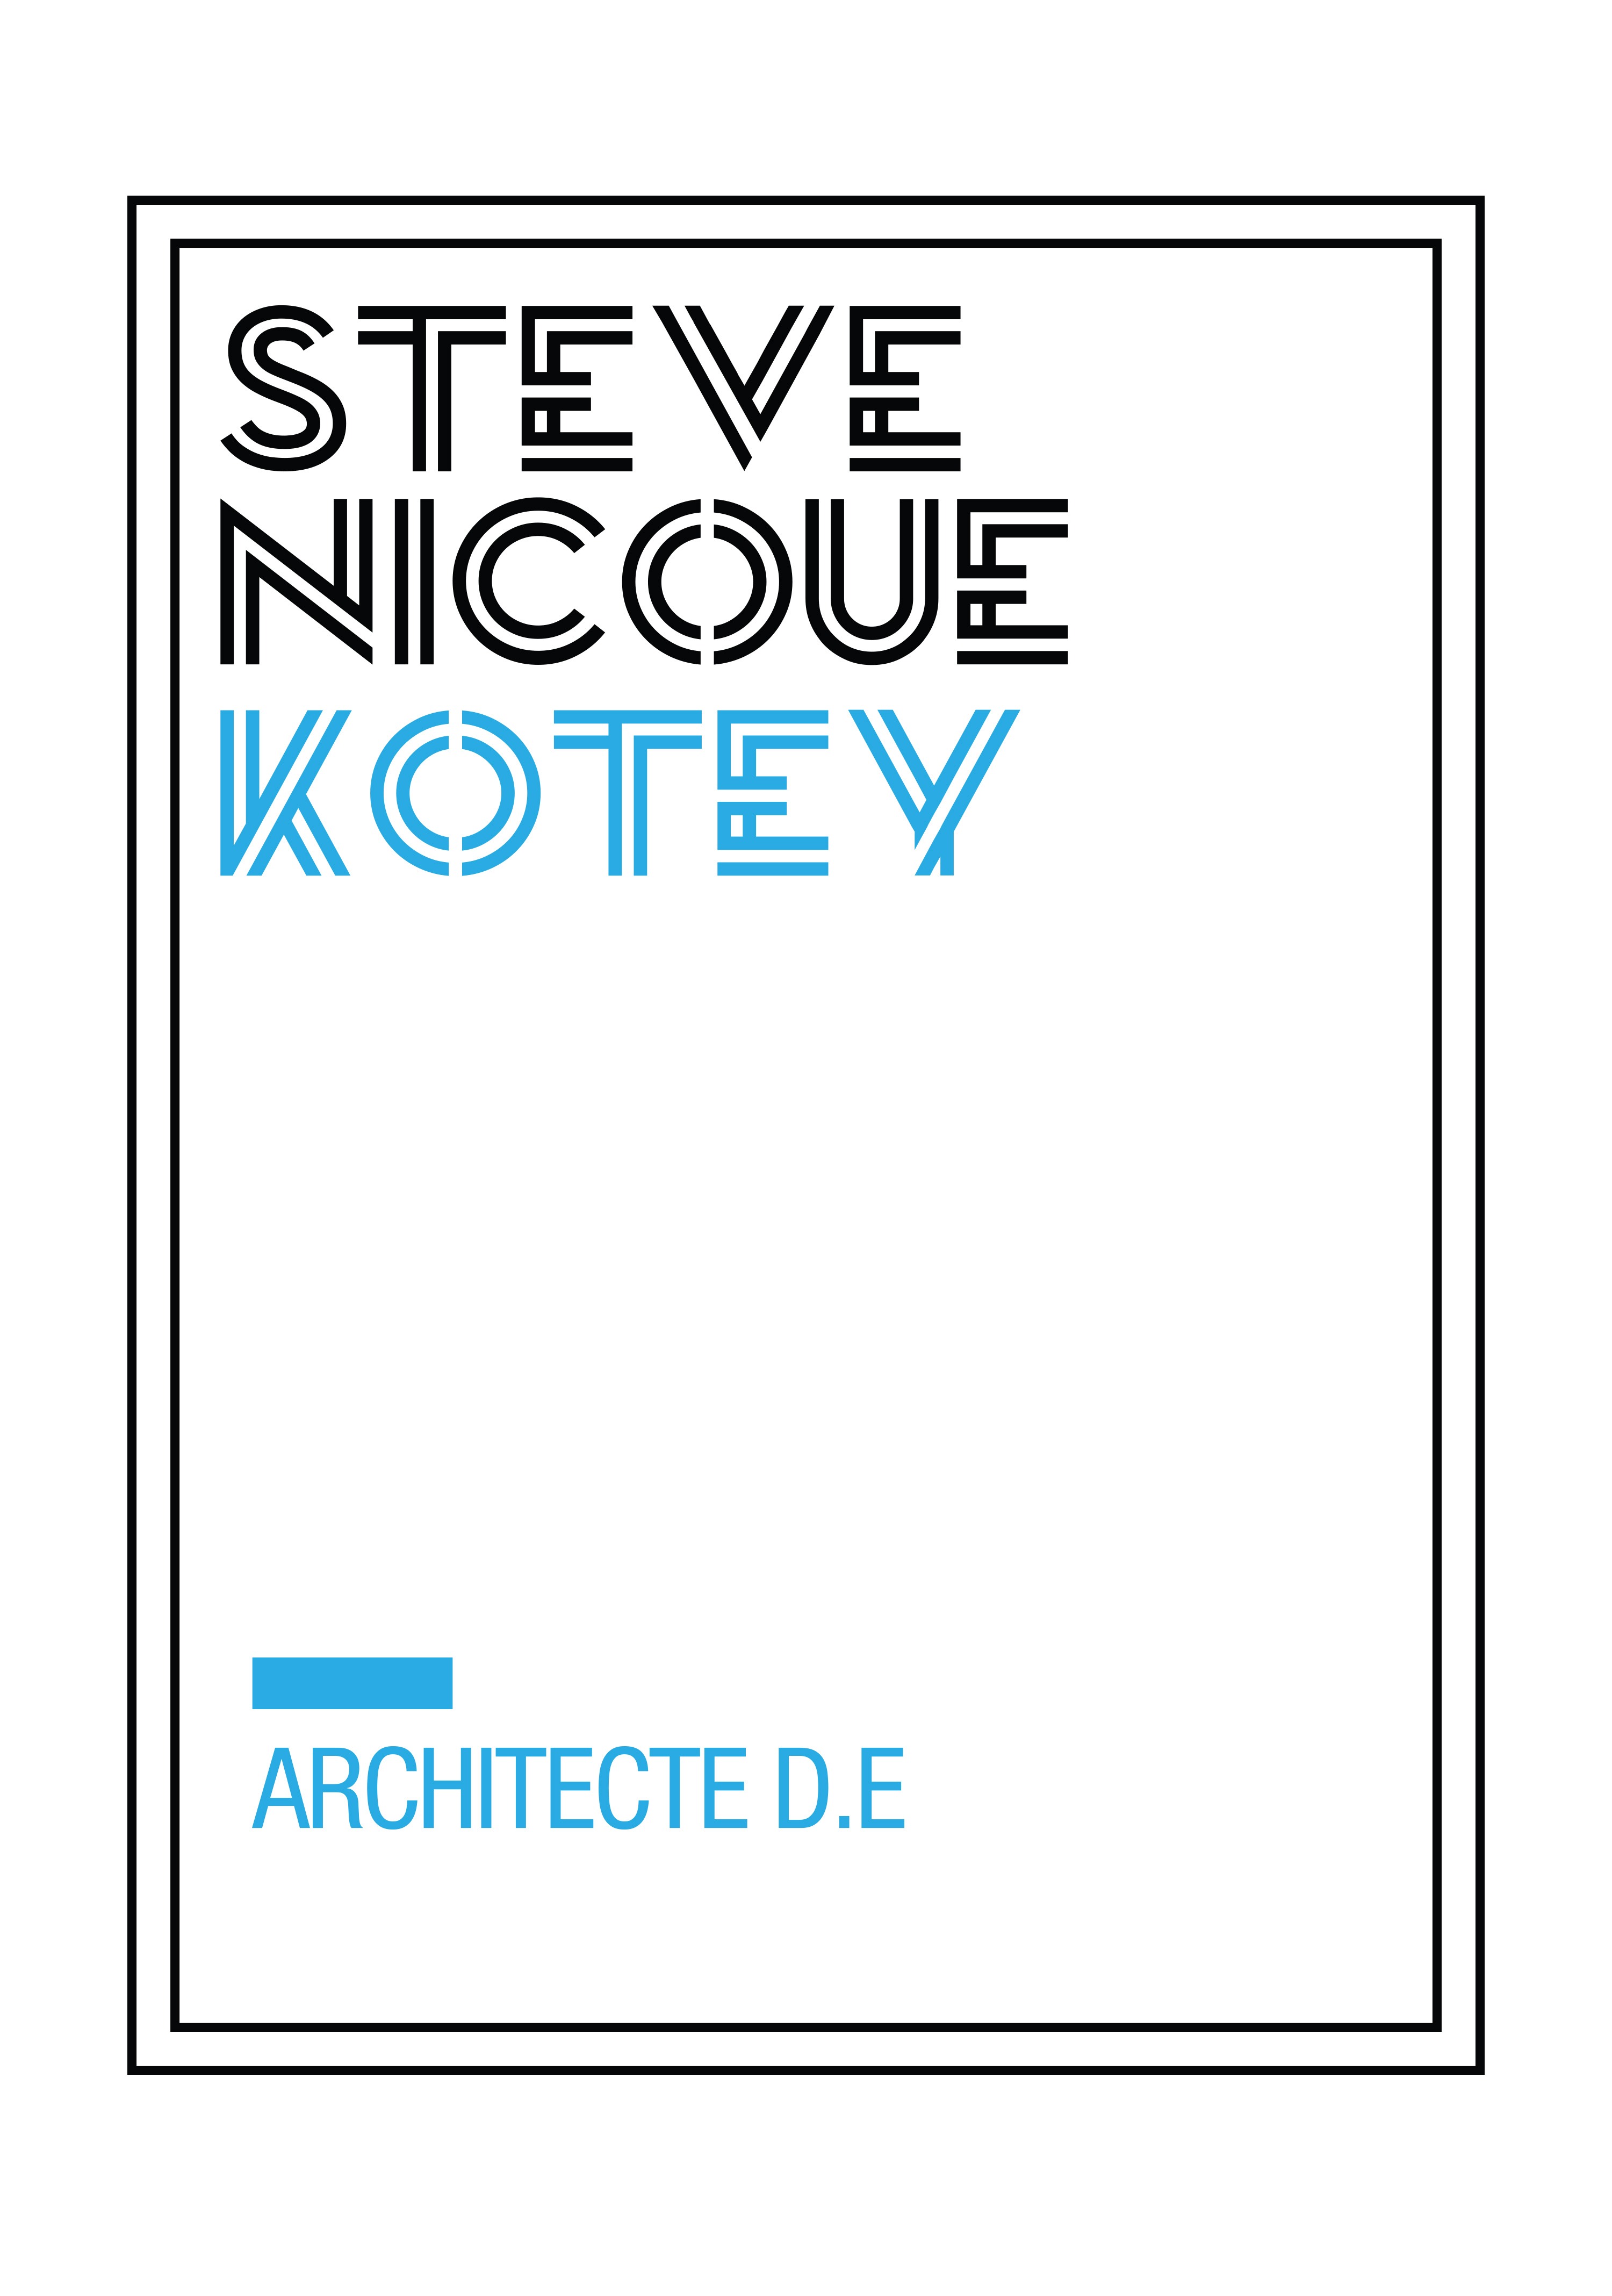 SNK - Steve Nicoué Kotey